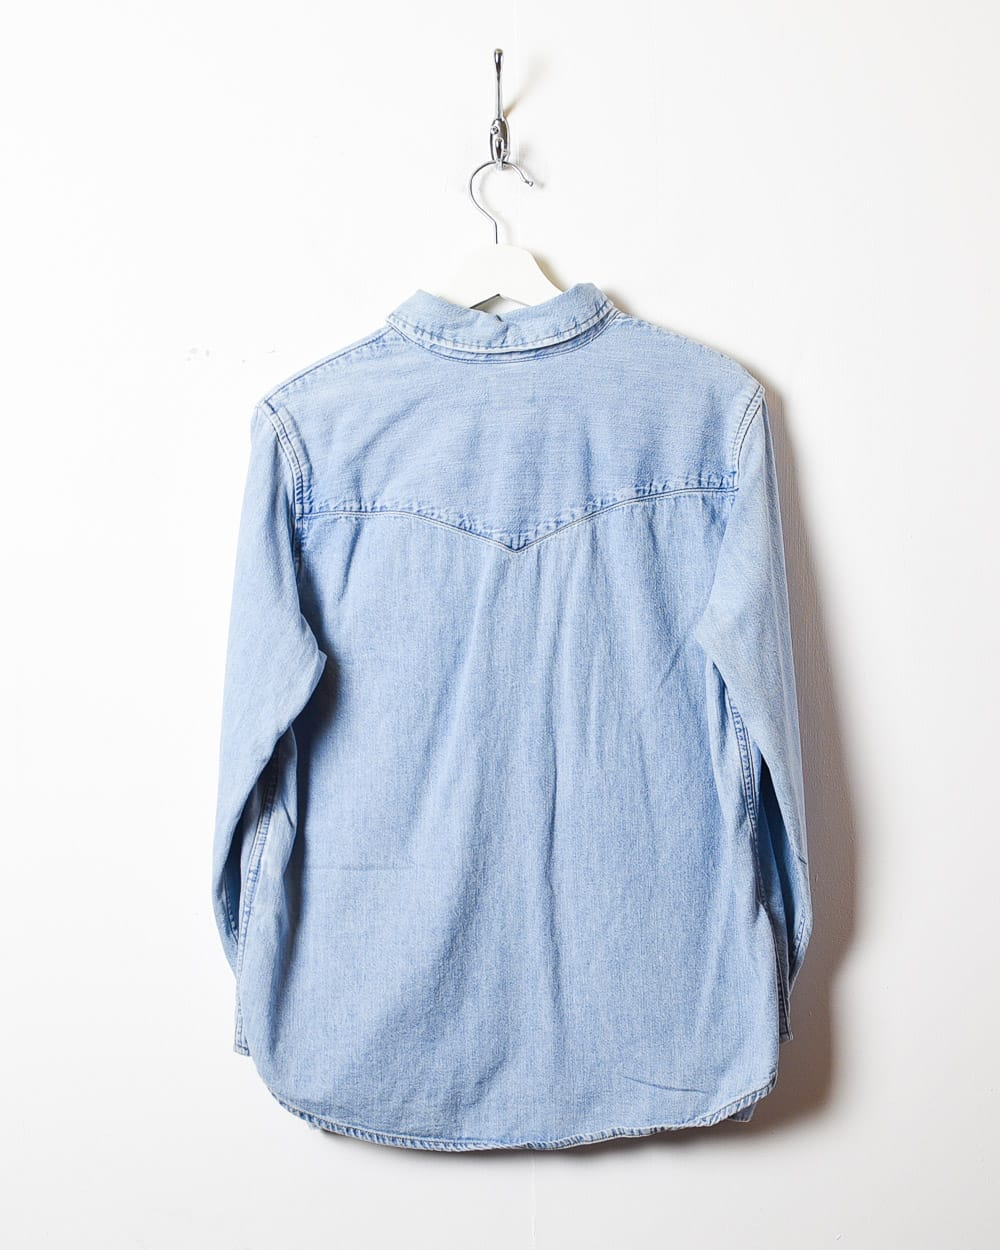 BabyBlue Levi's Denim Shirt - Medium Women's